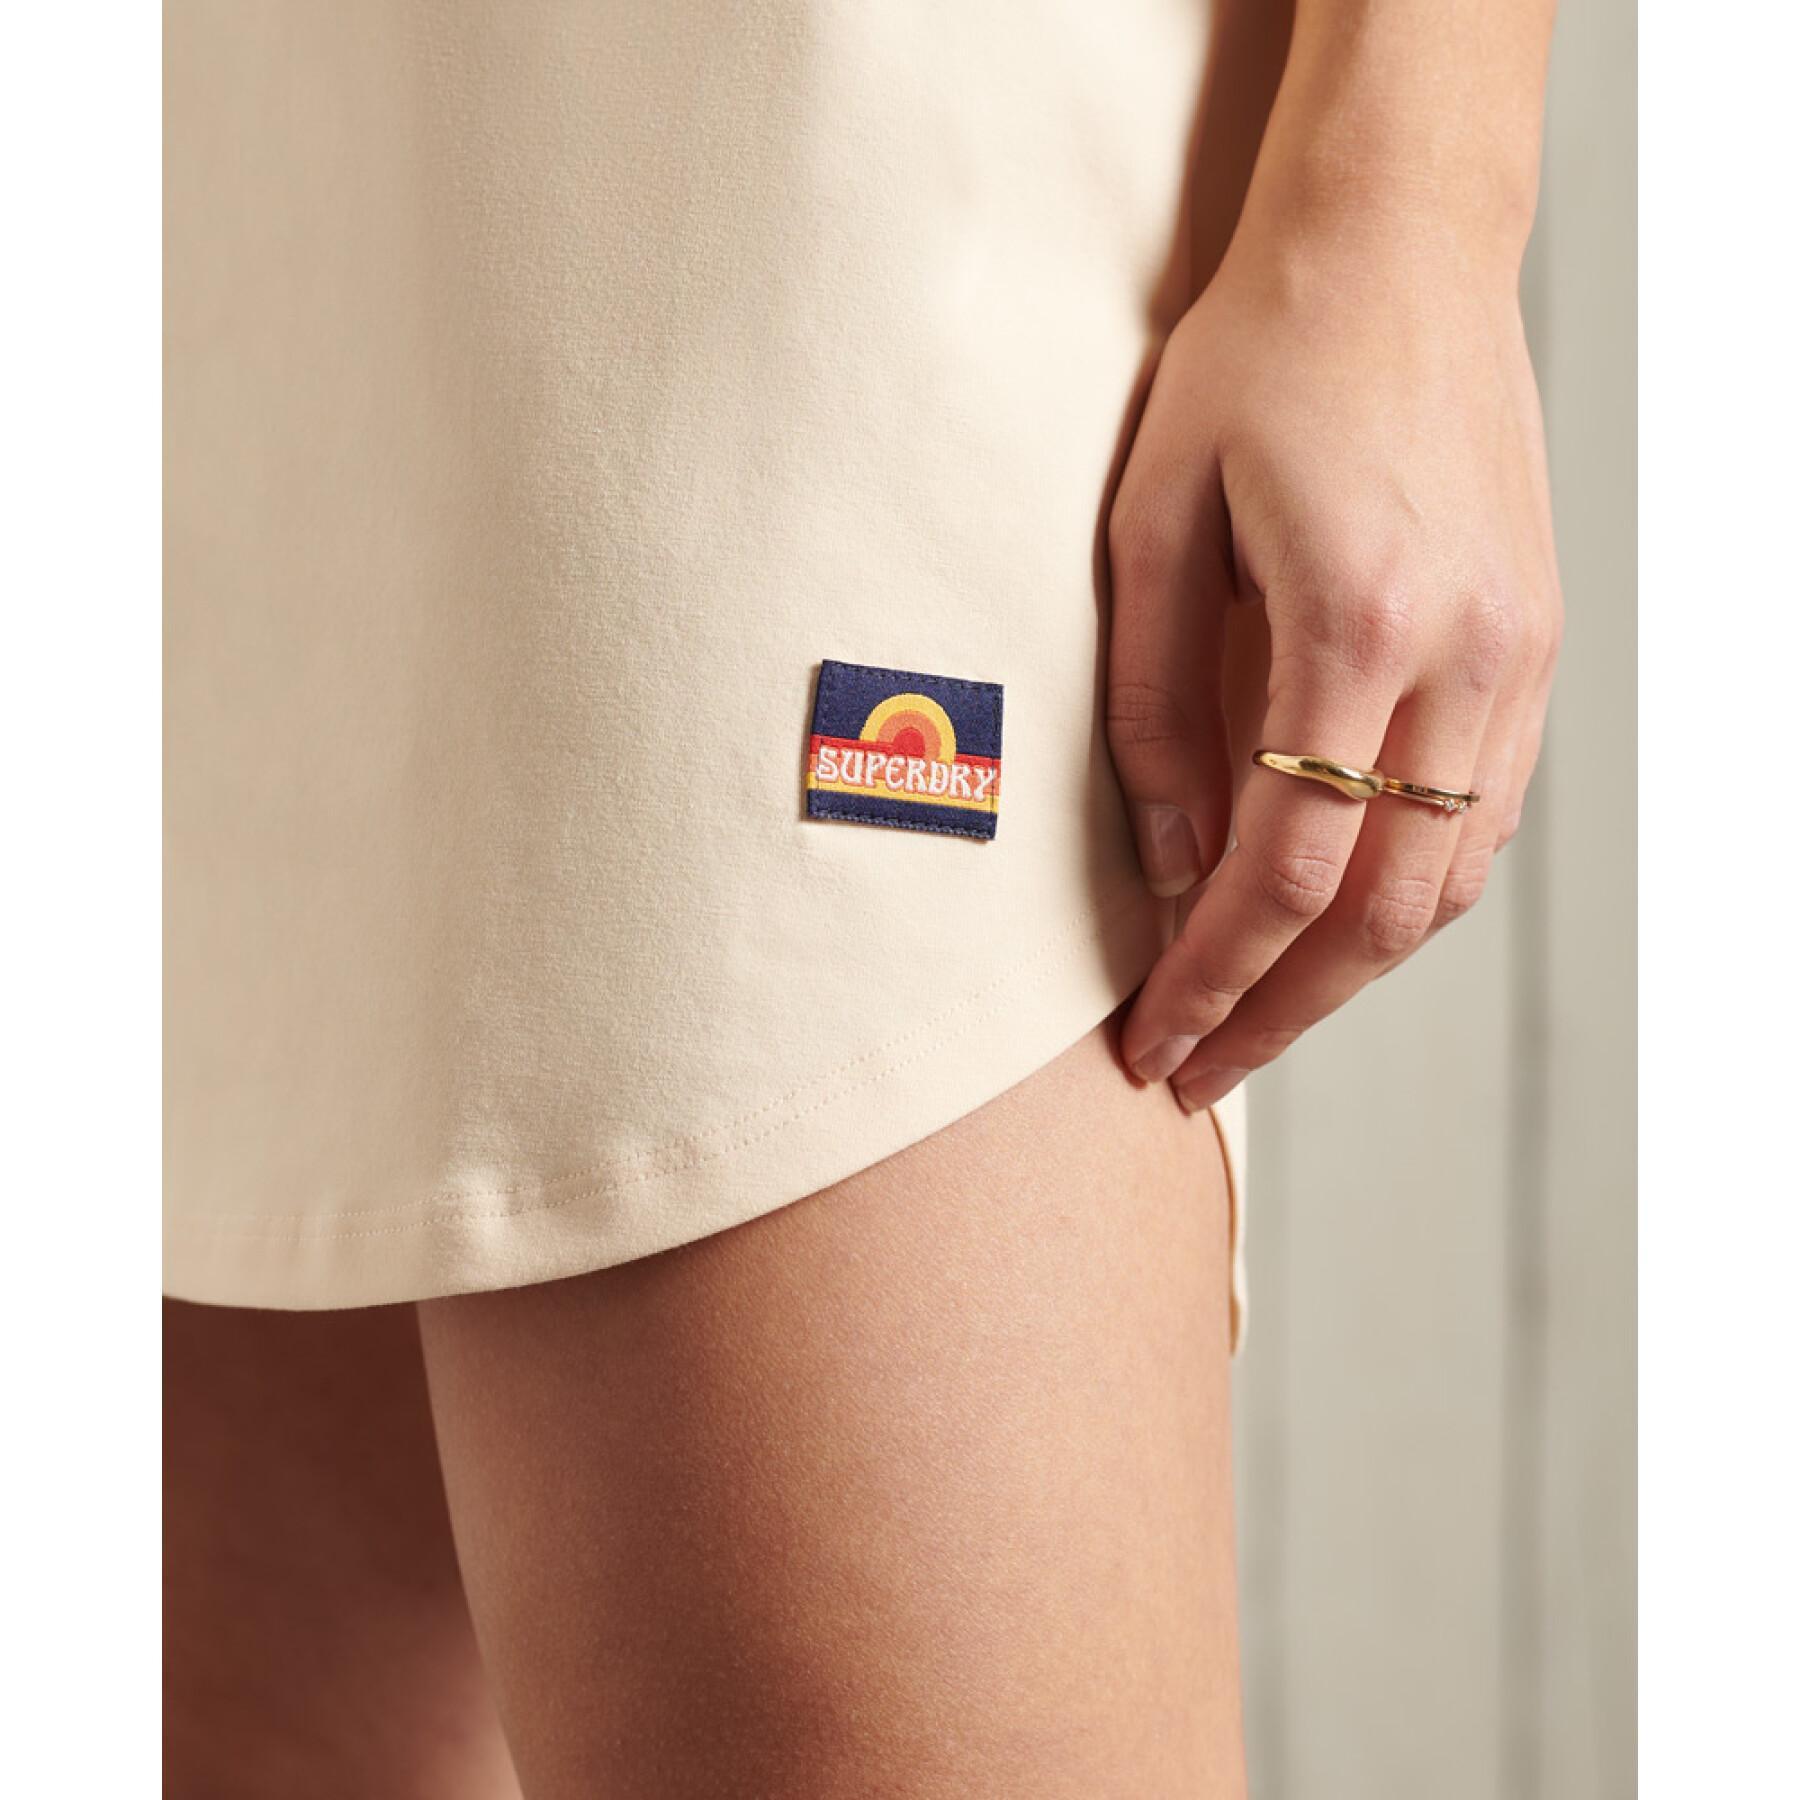 Women's raglan sleeve t-shirt dress Superdry Cali Surf